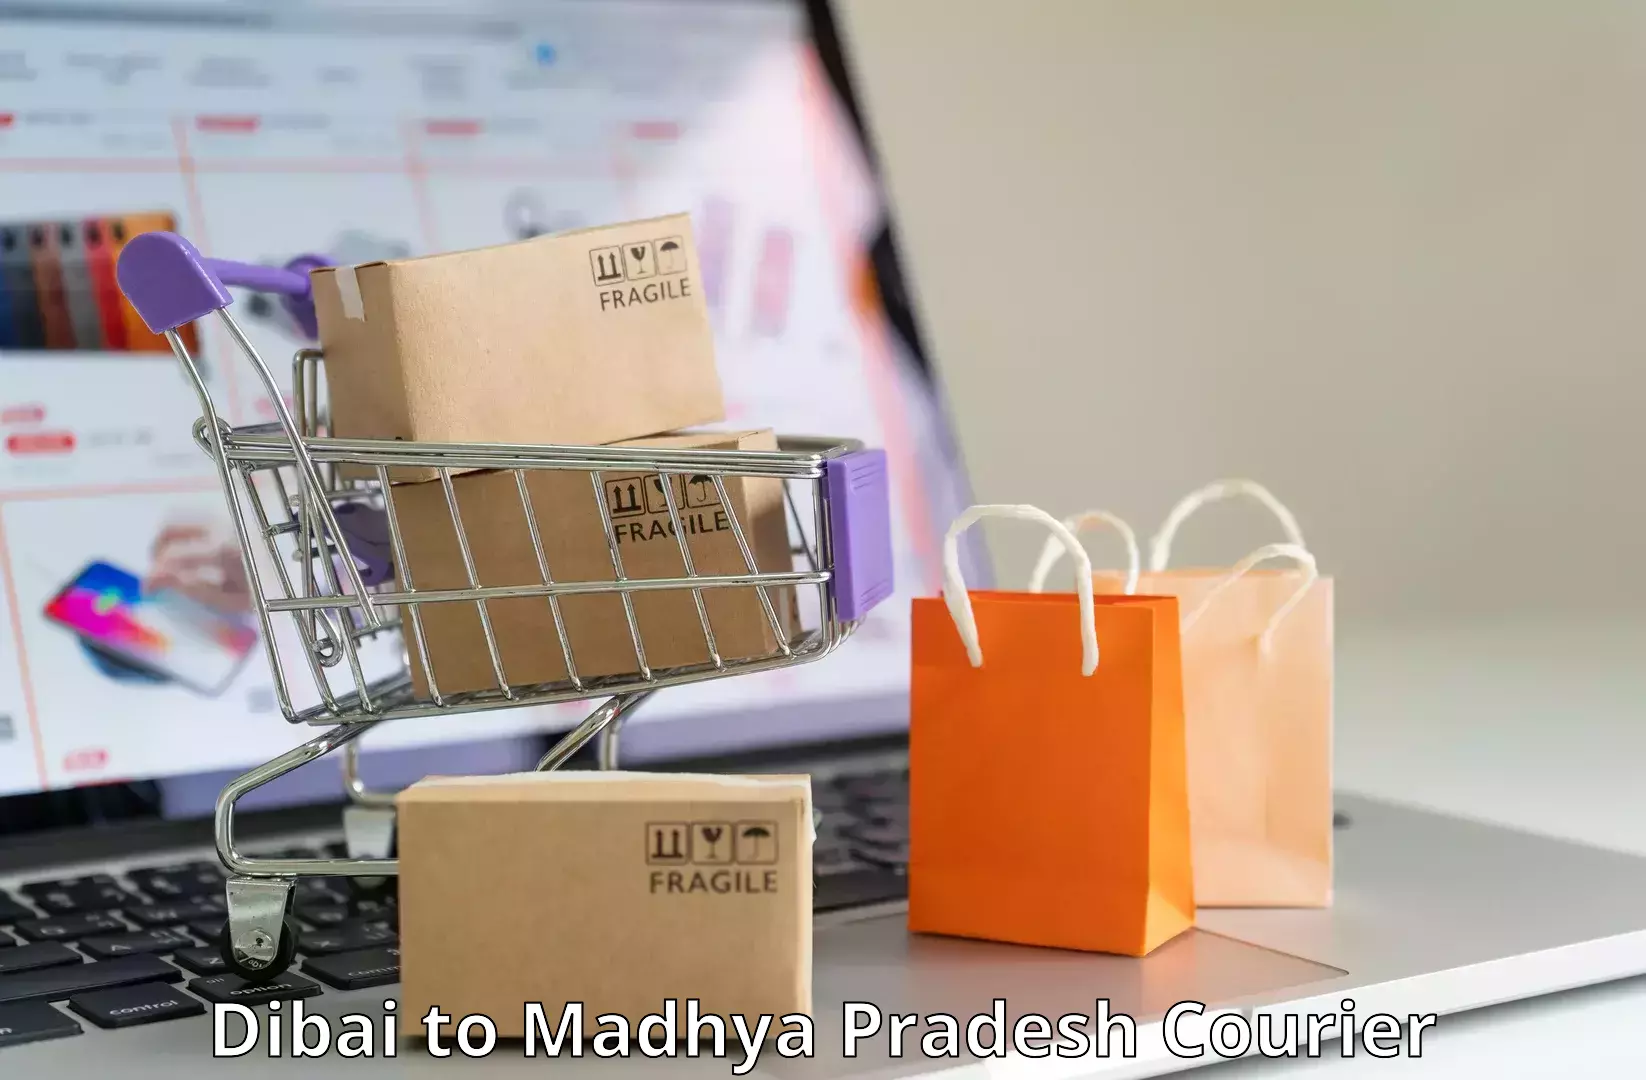 Customer-focused courier Dibai to Jatara